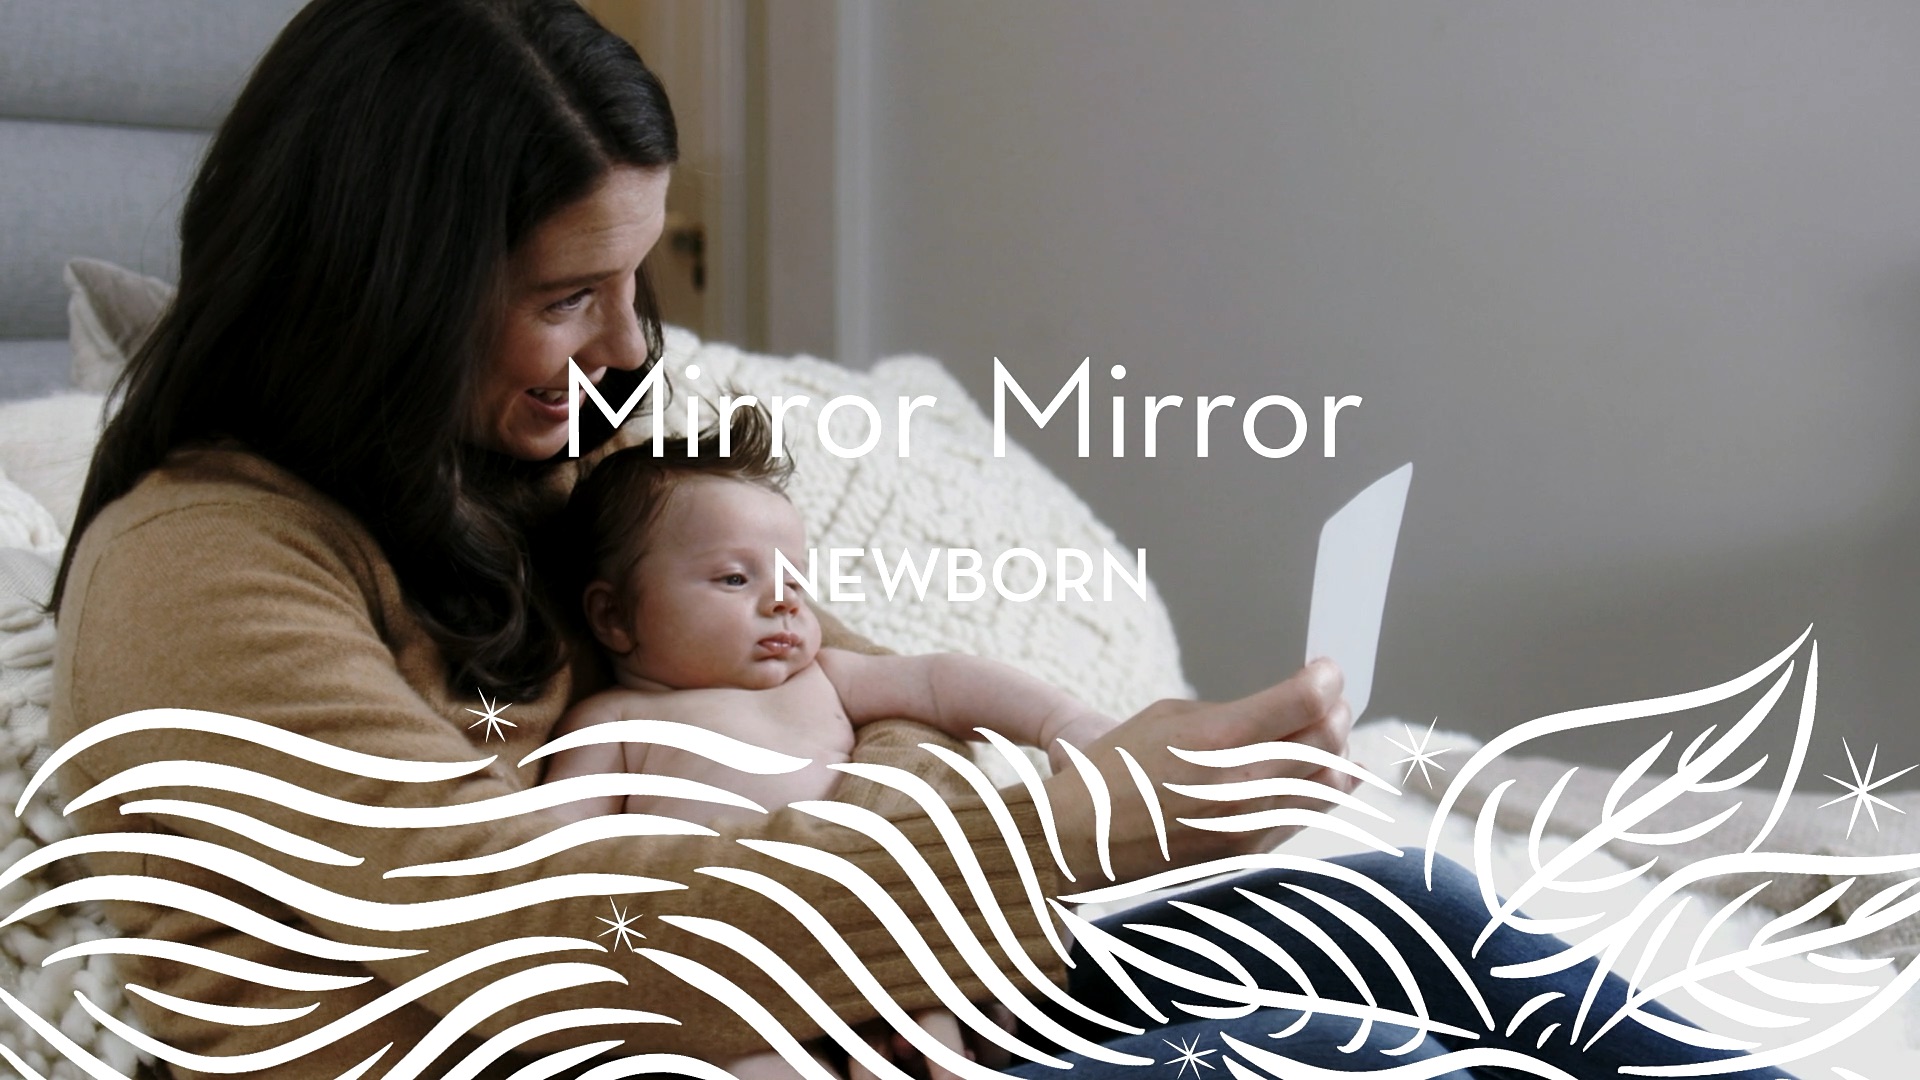 Newborn | Mirror Mirror